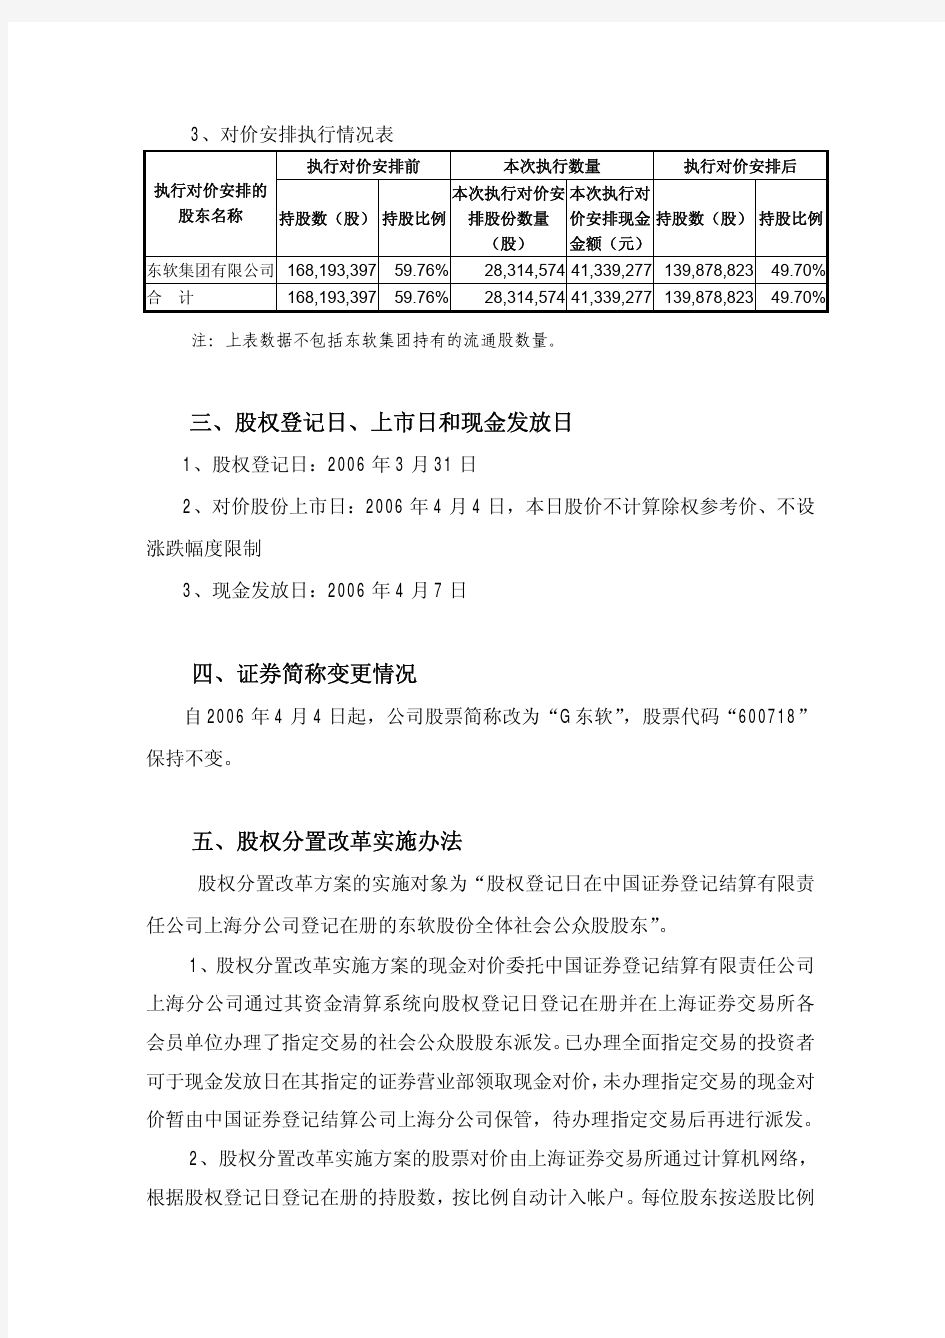 沈阳东软软件股份有限公司股权分置改革方案实施公告